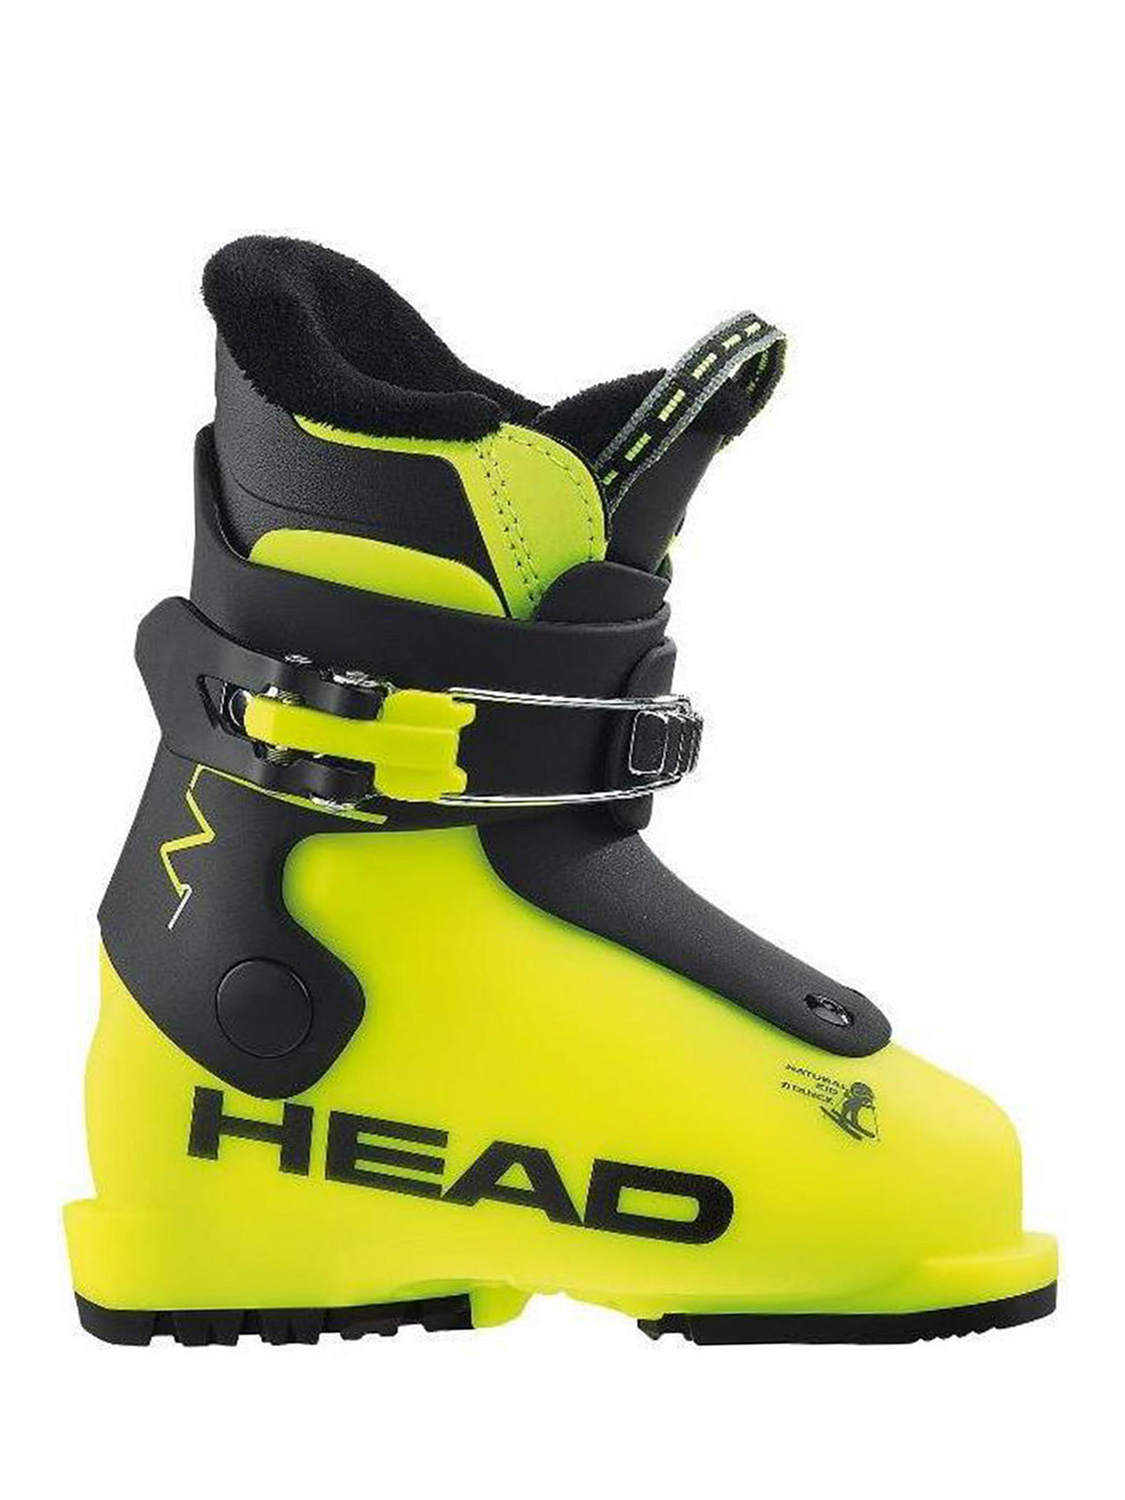 Горнолыжные ботинки детские HEAD Z1 yellow-black